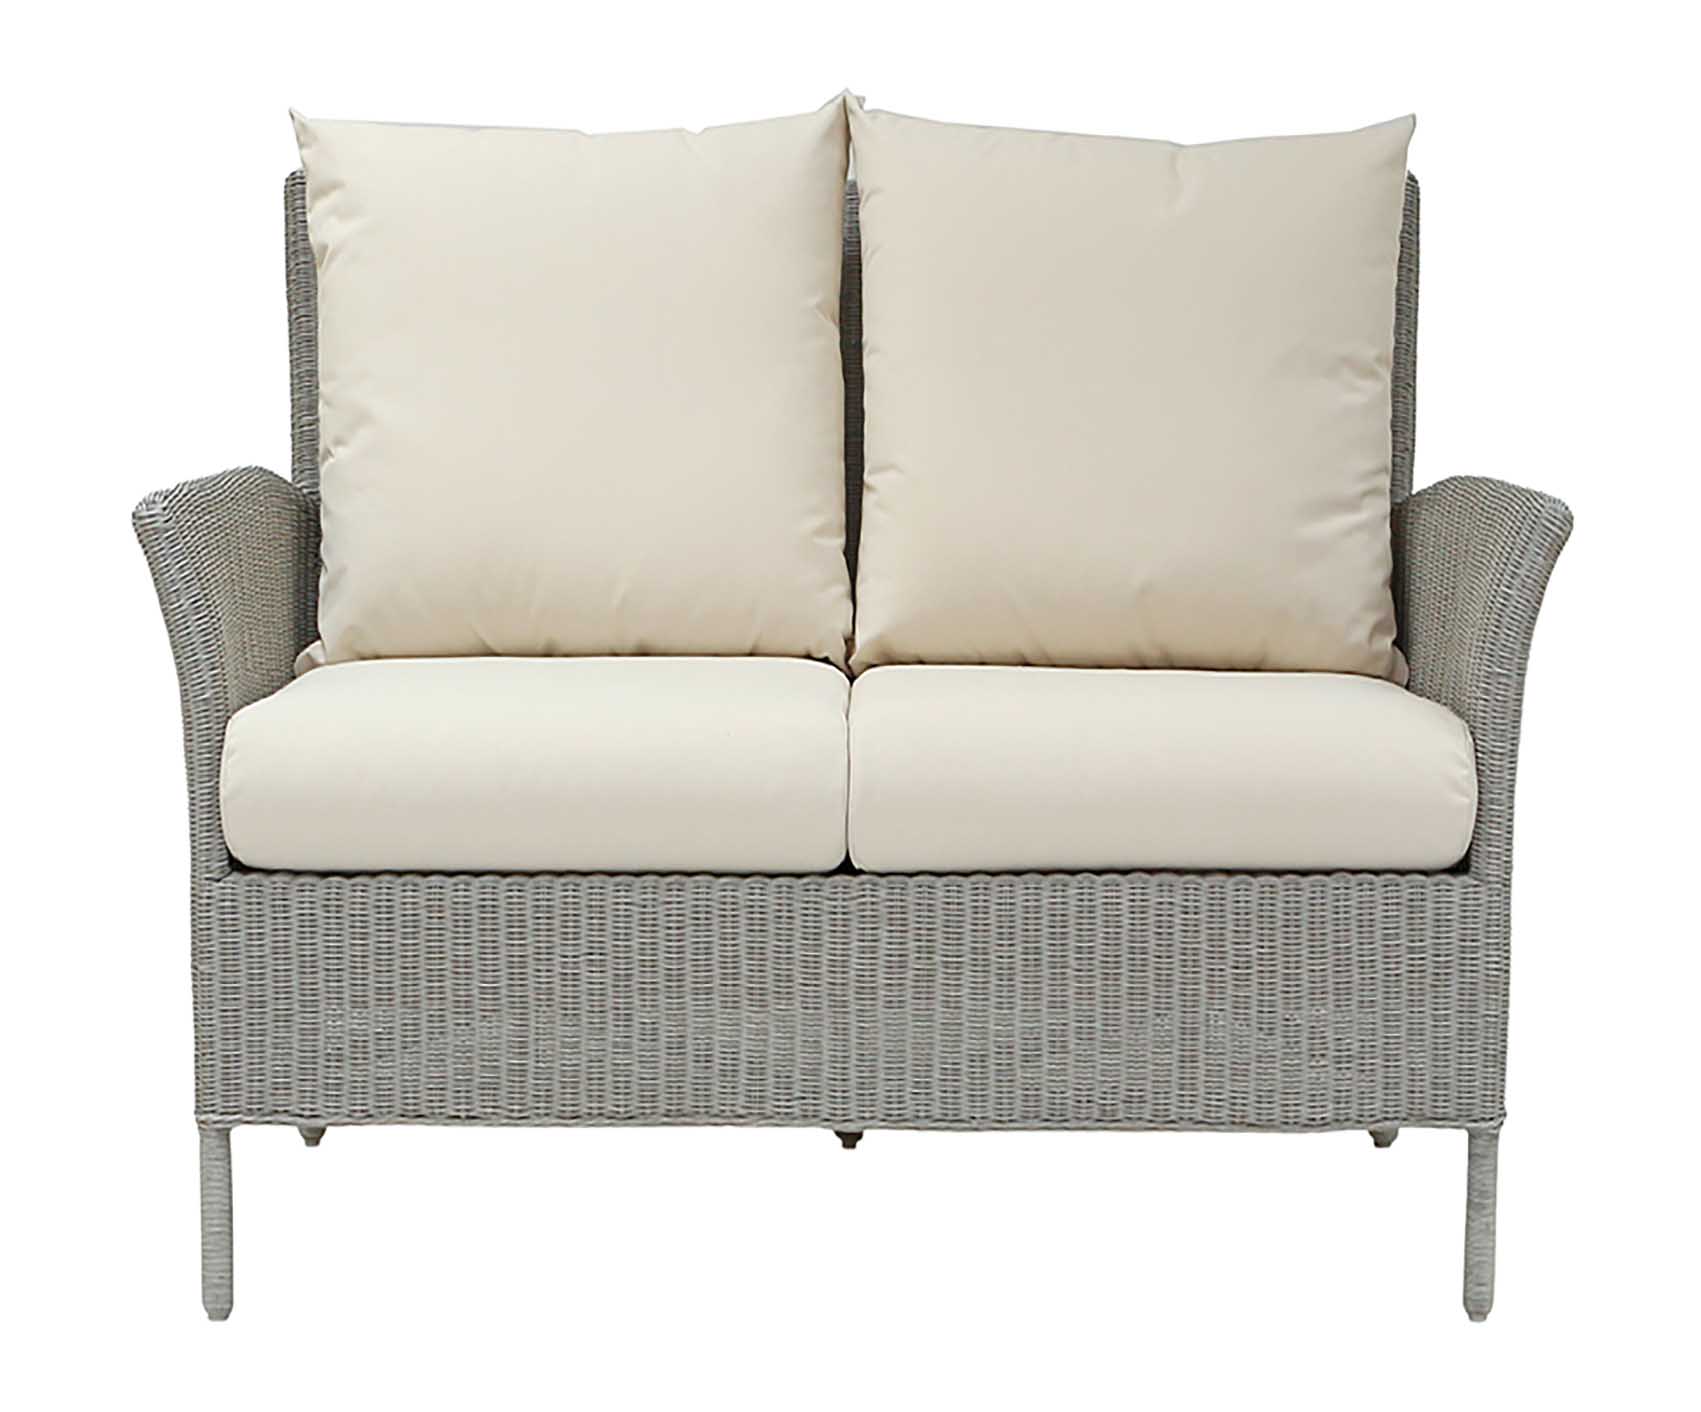 Wilton Grey Sofa by Laura Ashley